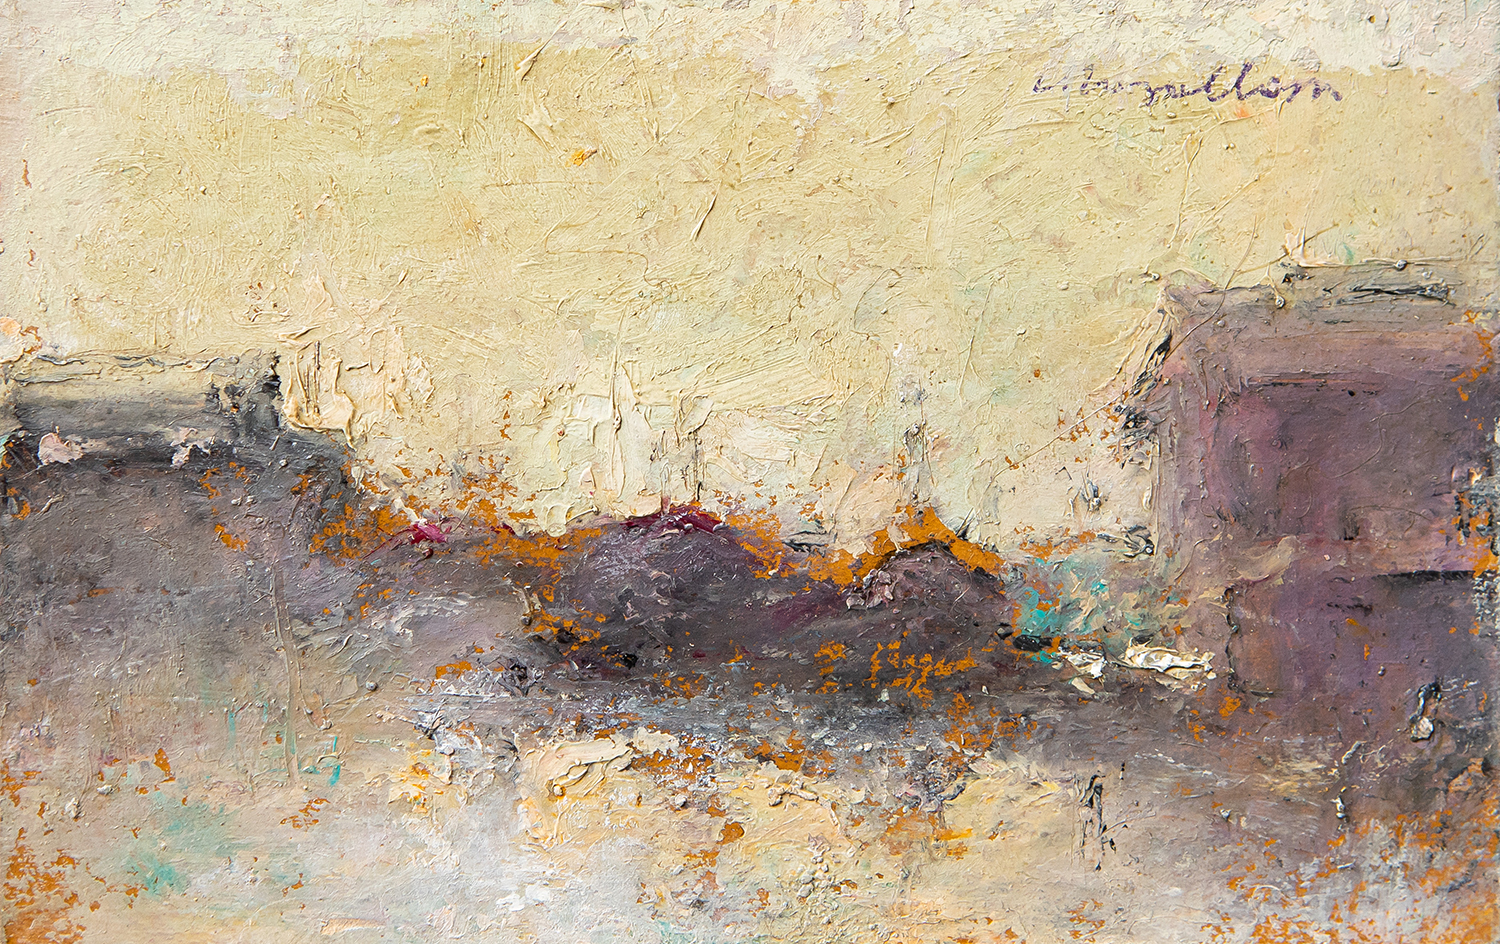 Paesaggio, s.d., olio su cartone, 9 x 14 cm 